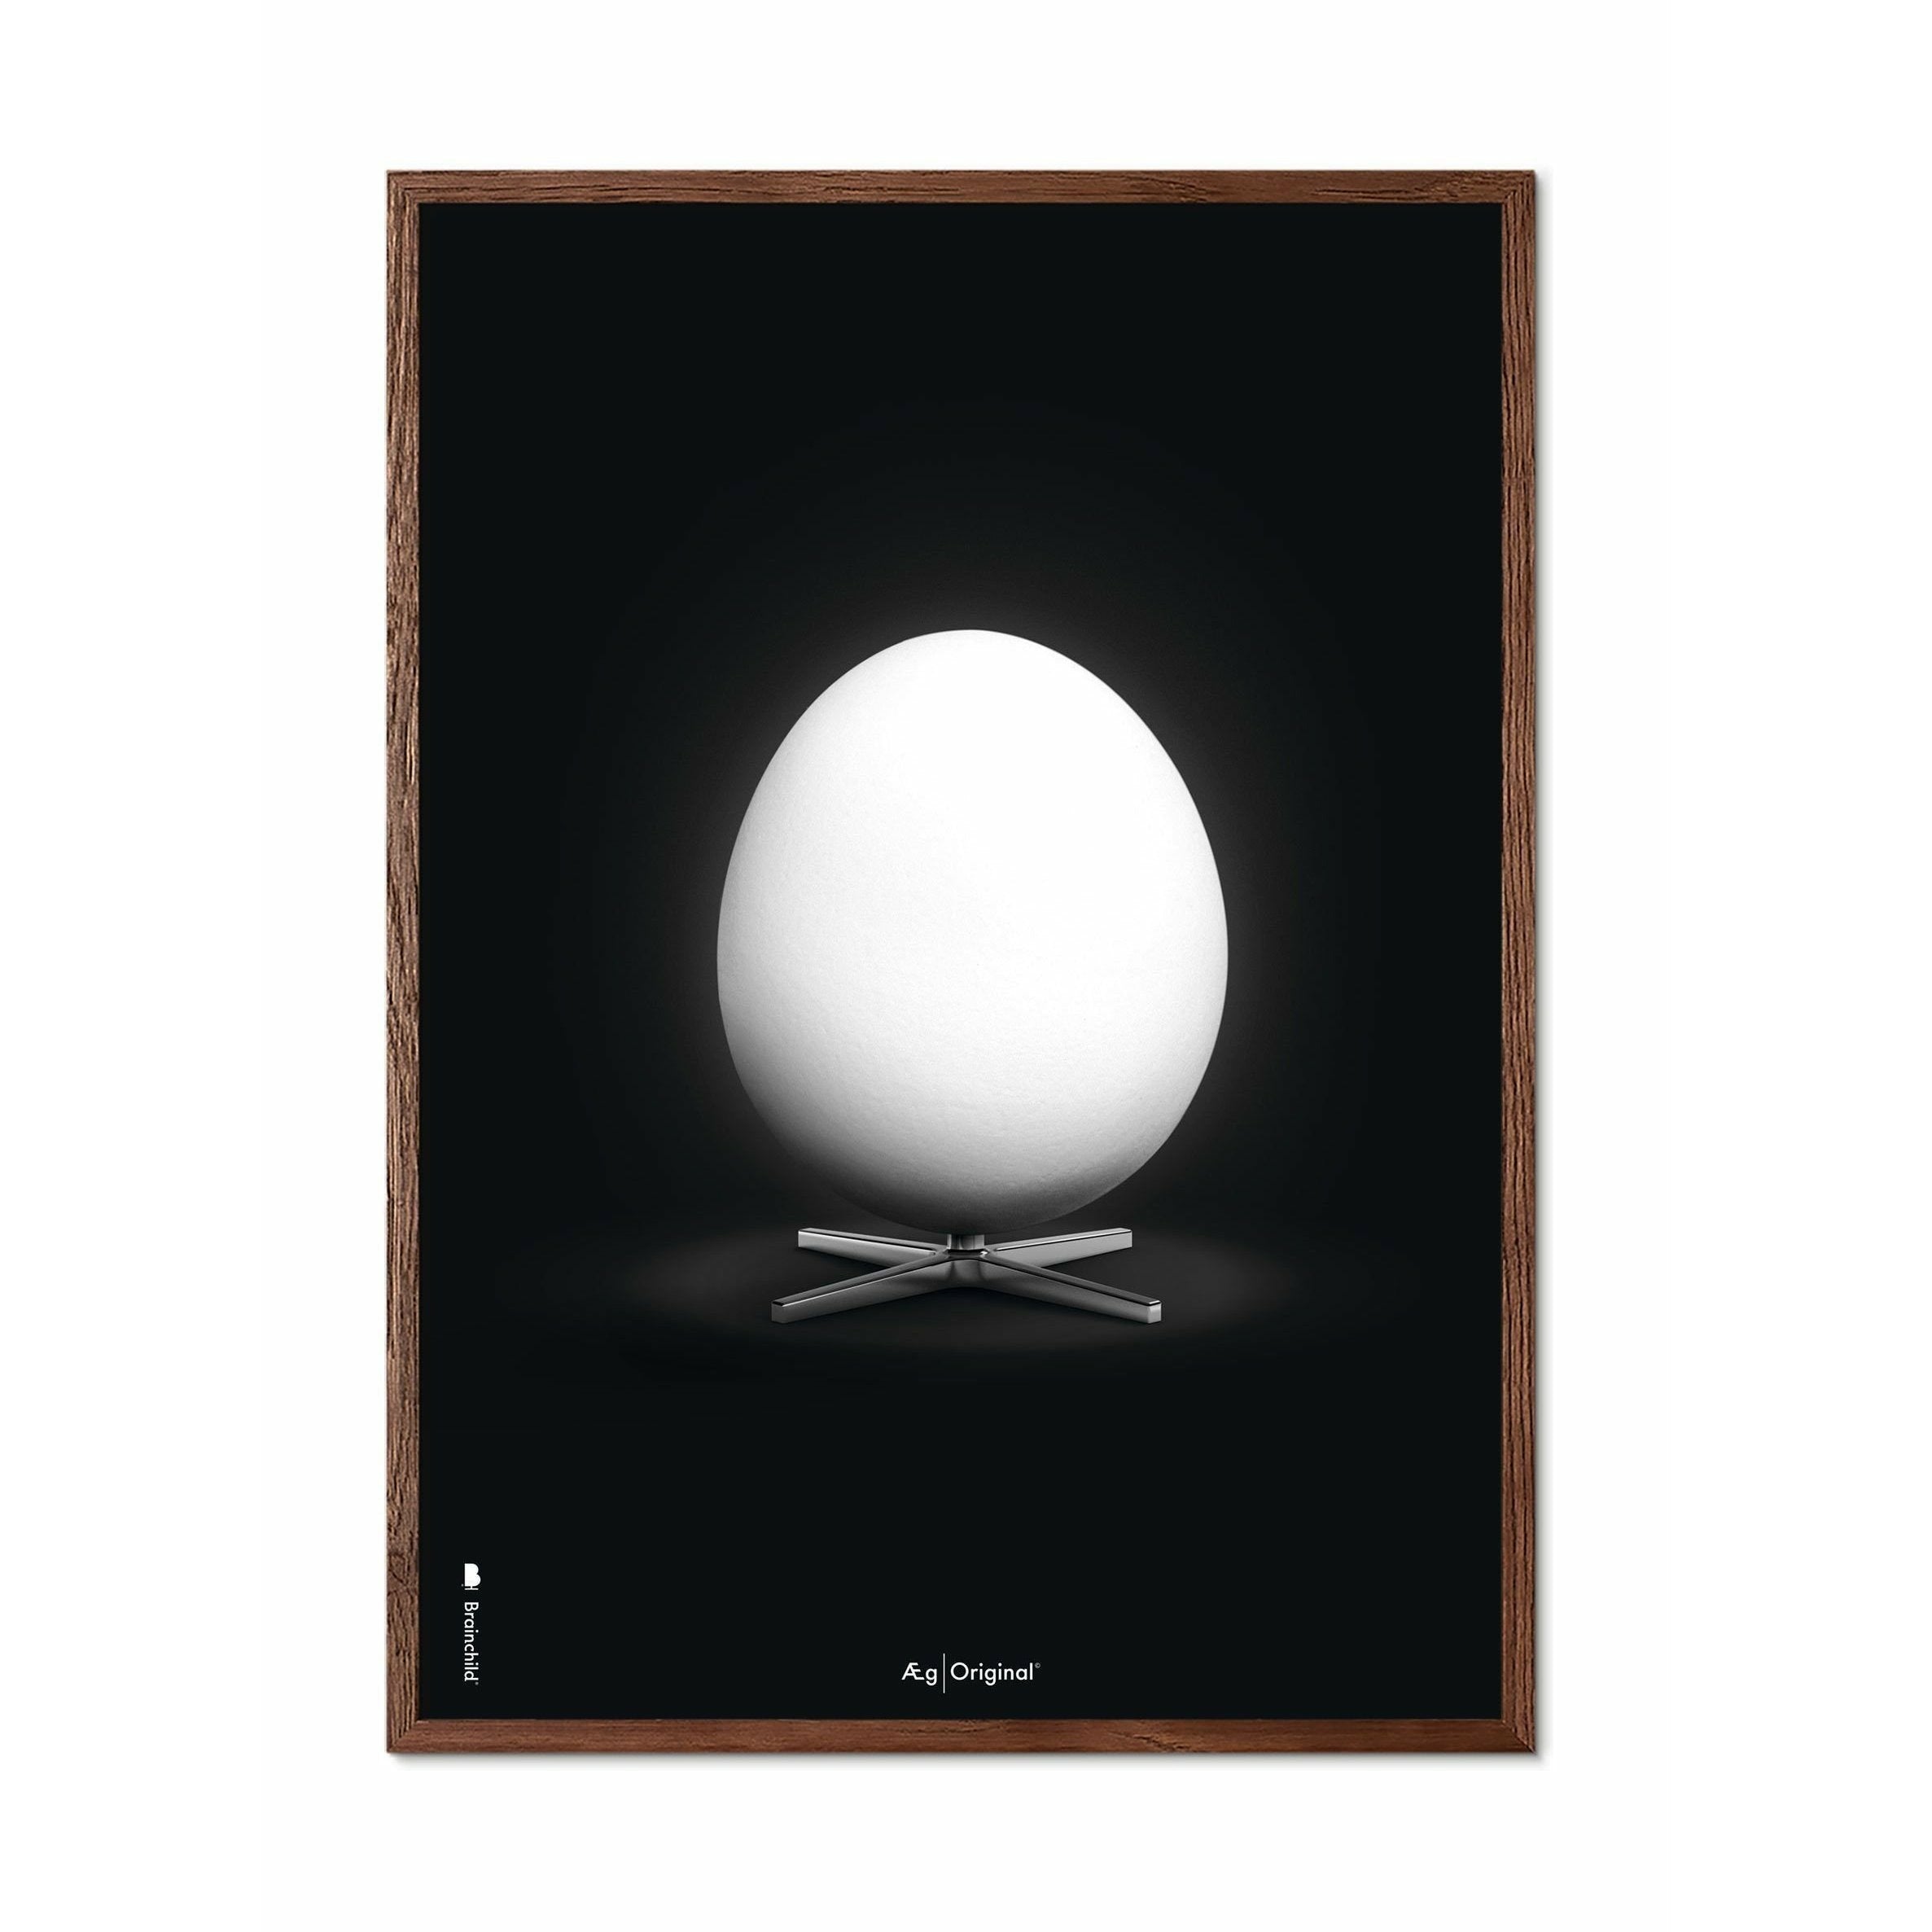 Póster clásico de huevo de creación, marco de madera oscura A5, fondo negro